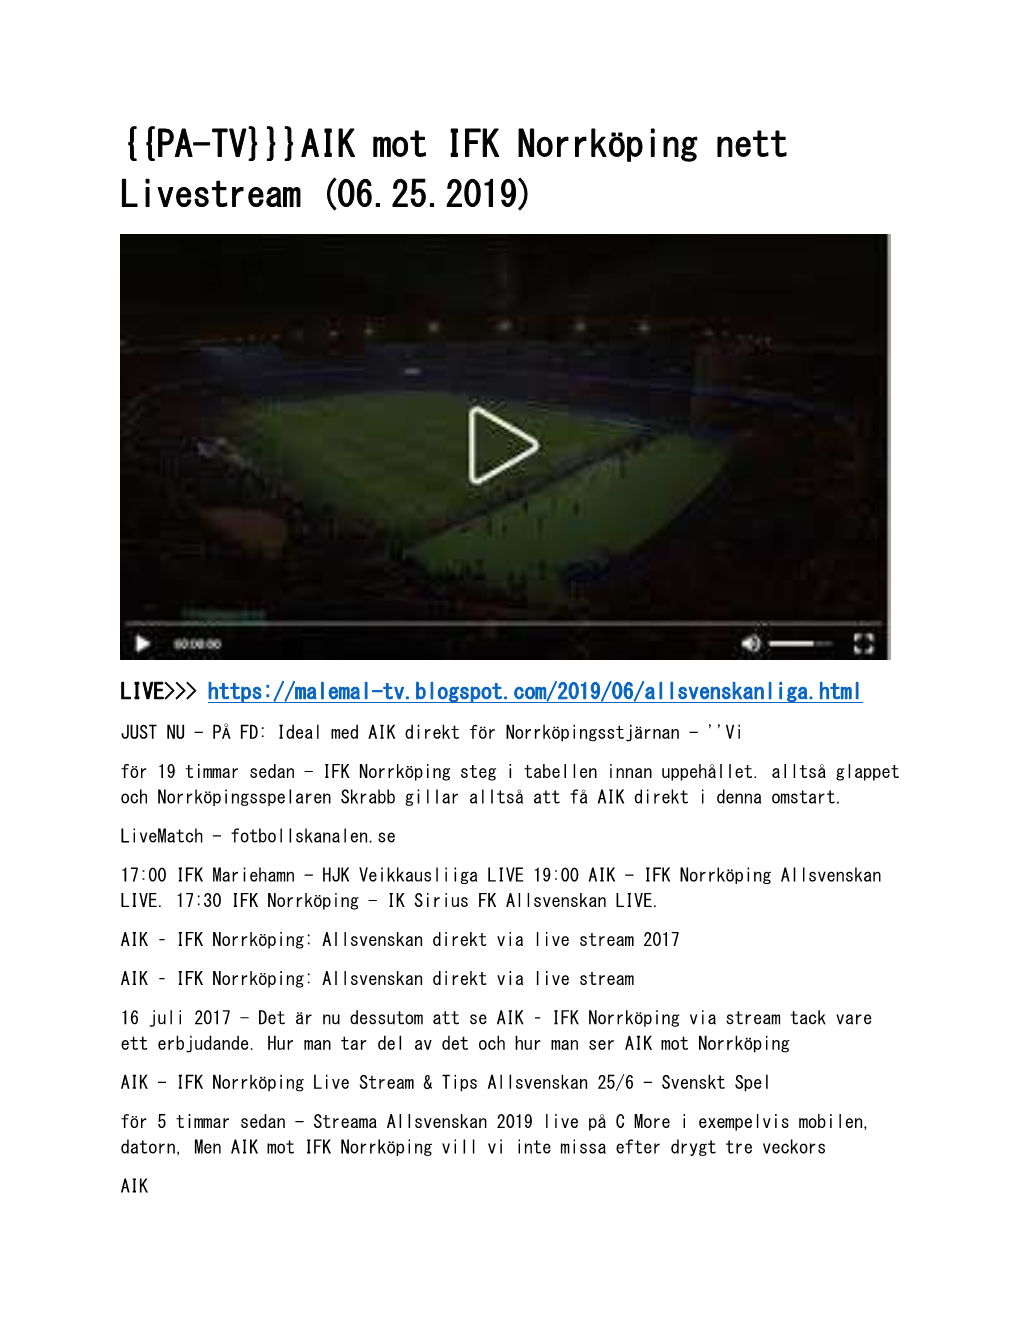 AIK Mot IFK Norrköping Nett Livestream (06.25.2019)